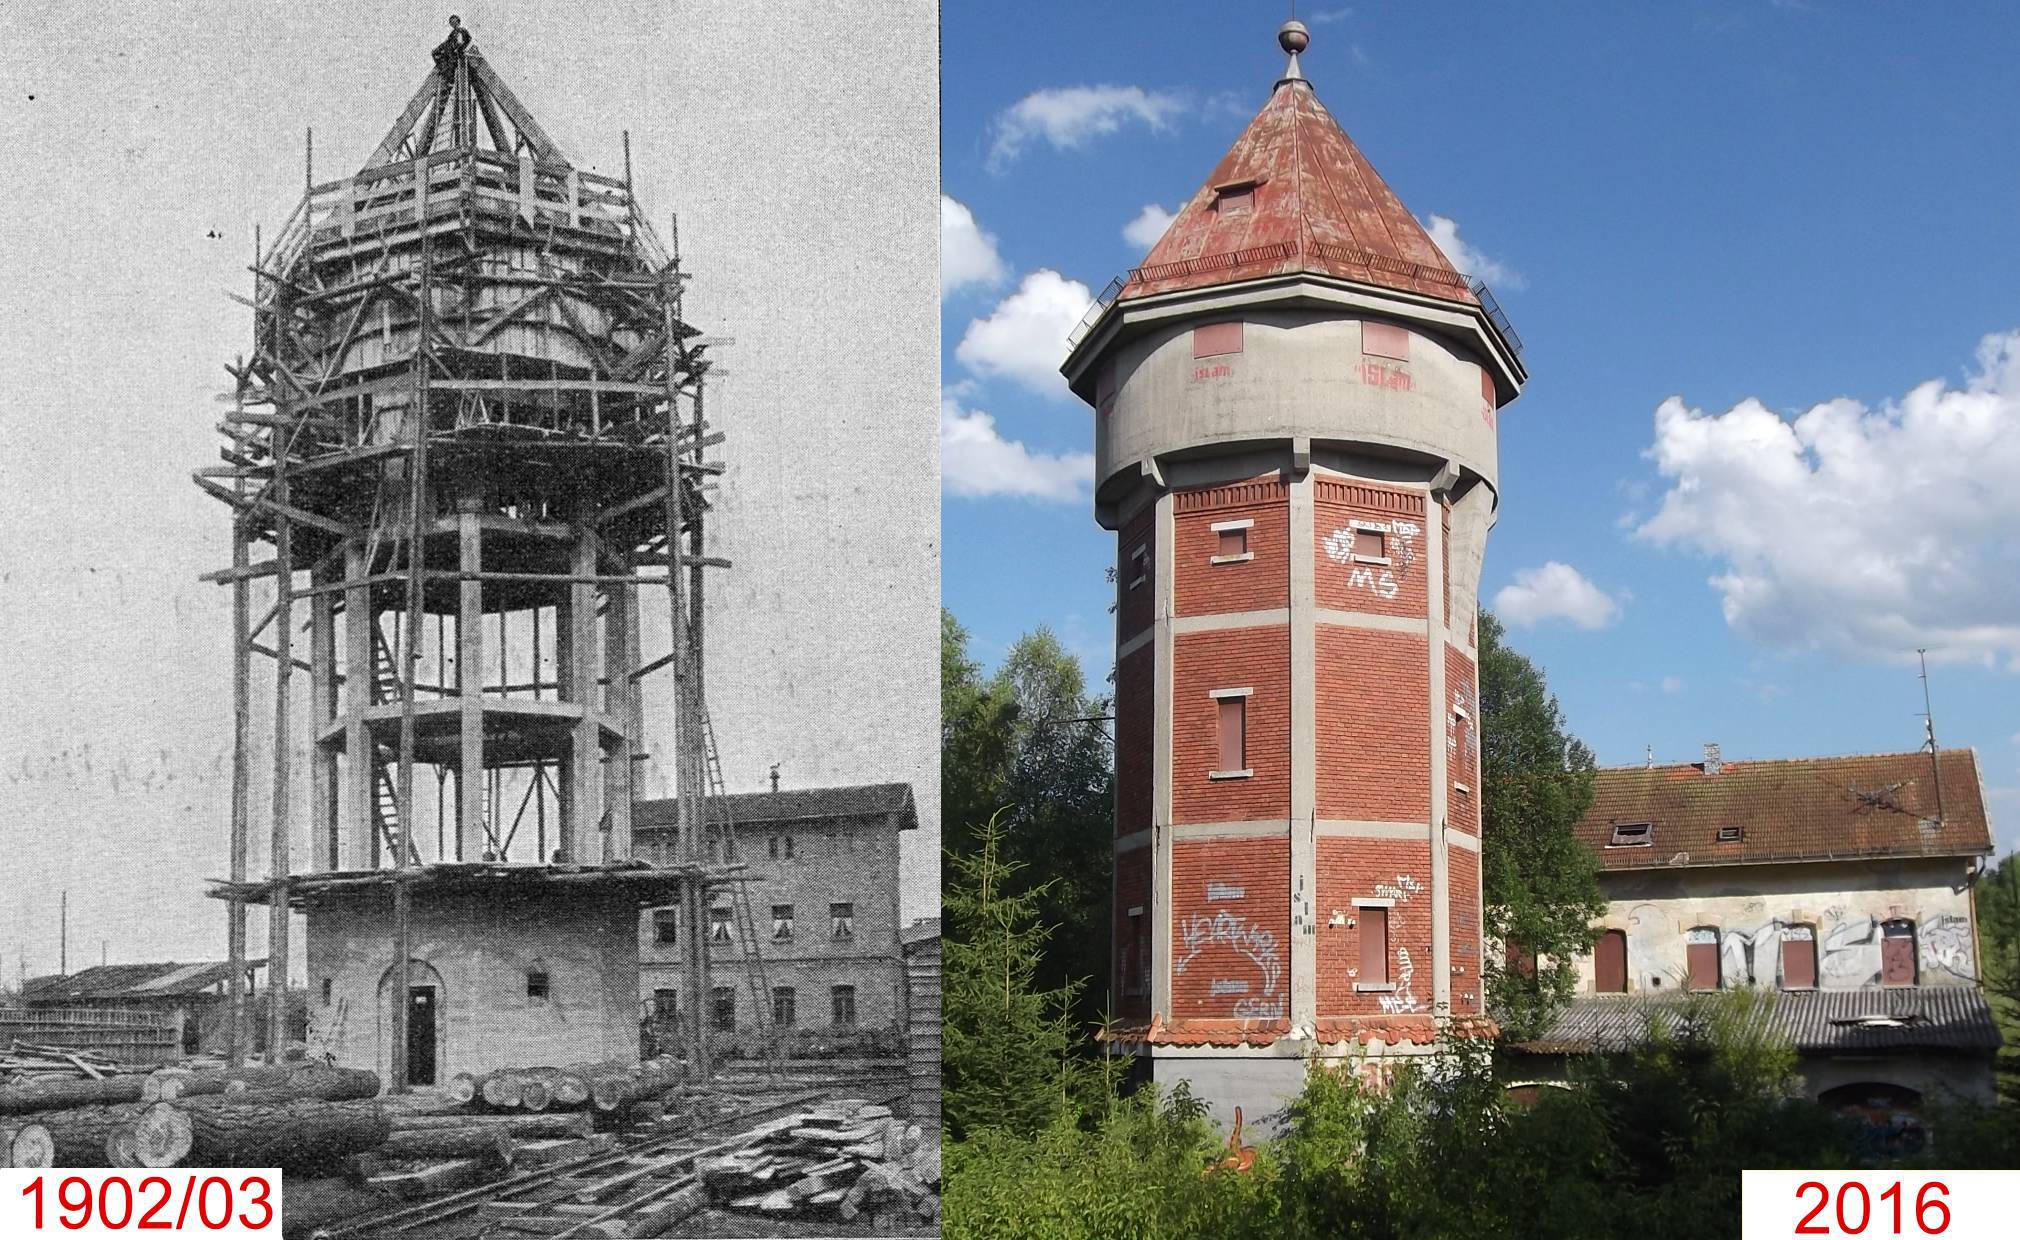 Linkes Photo: Bau des Wasserturms im Jahr 1902/03; rechtes Photo: Heutige Ansicht des Wasserturm mit ehem. Kantinengebude des Schwellenwerks